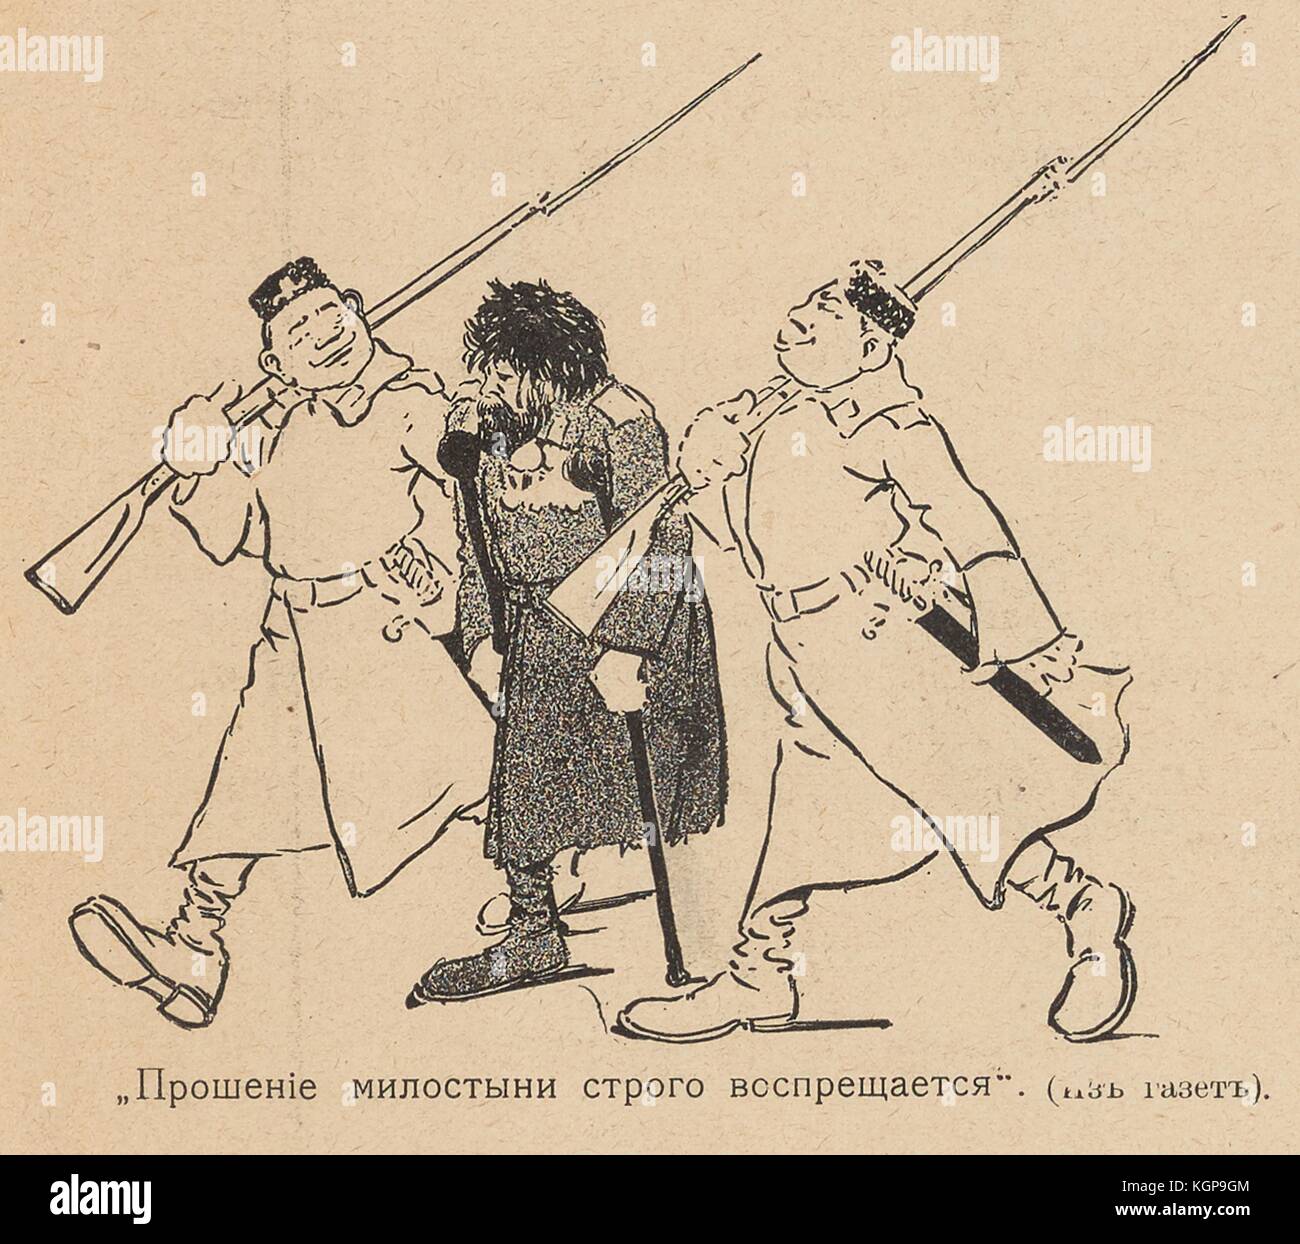 Cartoon aus dem russischen satirischen Magazin Bomby (Bombs), in dem ein entstellter Mann mit einem Bein und einem Gehstock dargestellt wird und der von zwei stolzen Polizisten mit Gewehren begleitet wird, mit dem Text "Betteln um Almosen ist strengstens verboten", 1905. () Stockfoto